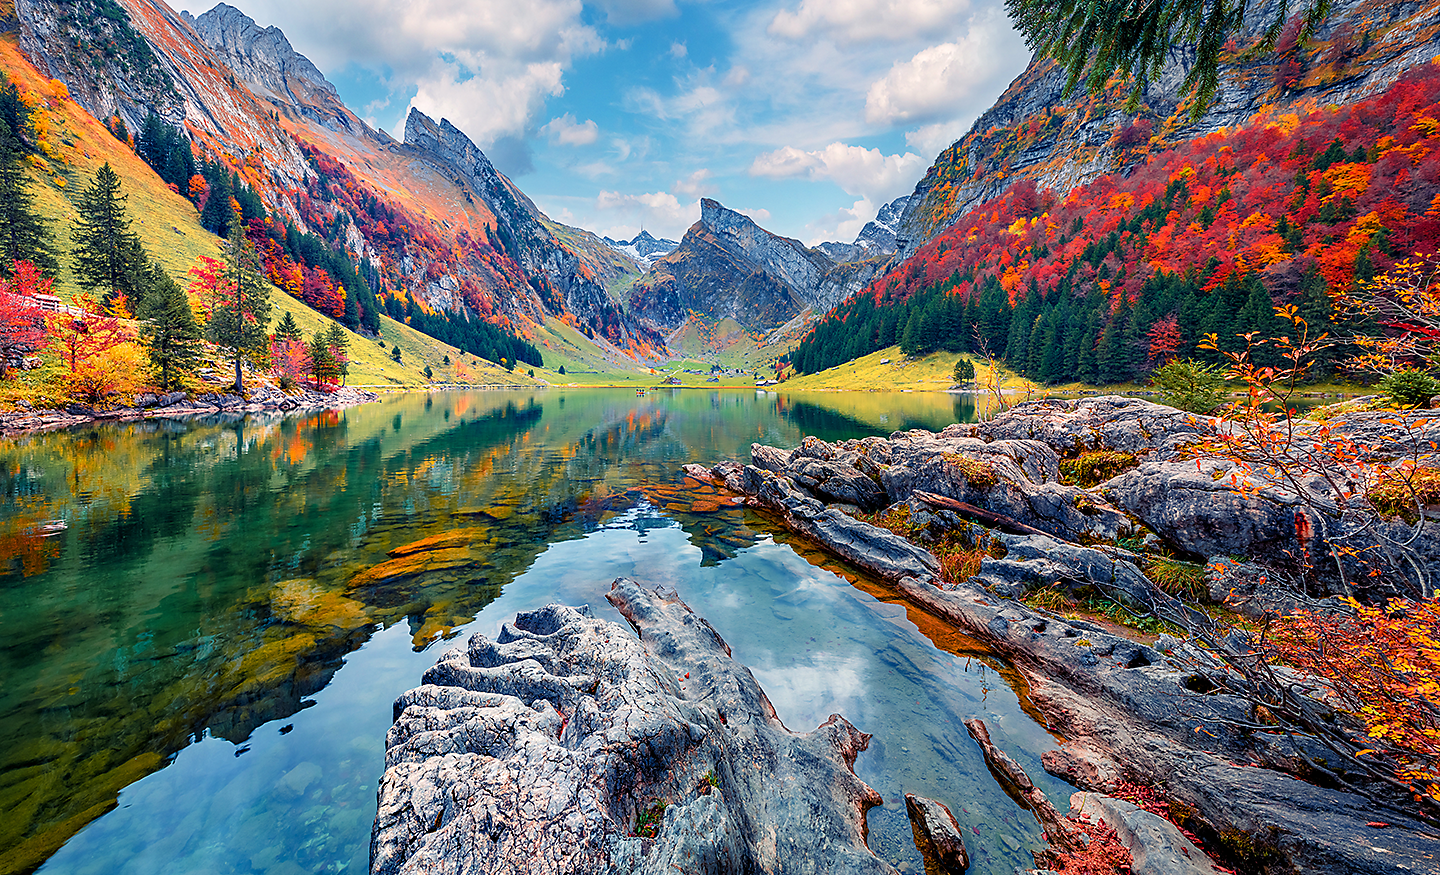 Slika jezera okruženog planinama i drvećem neverovatno bogatih, živih boja